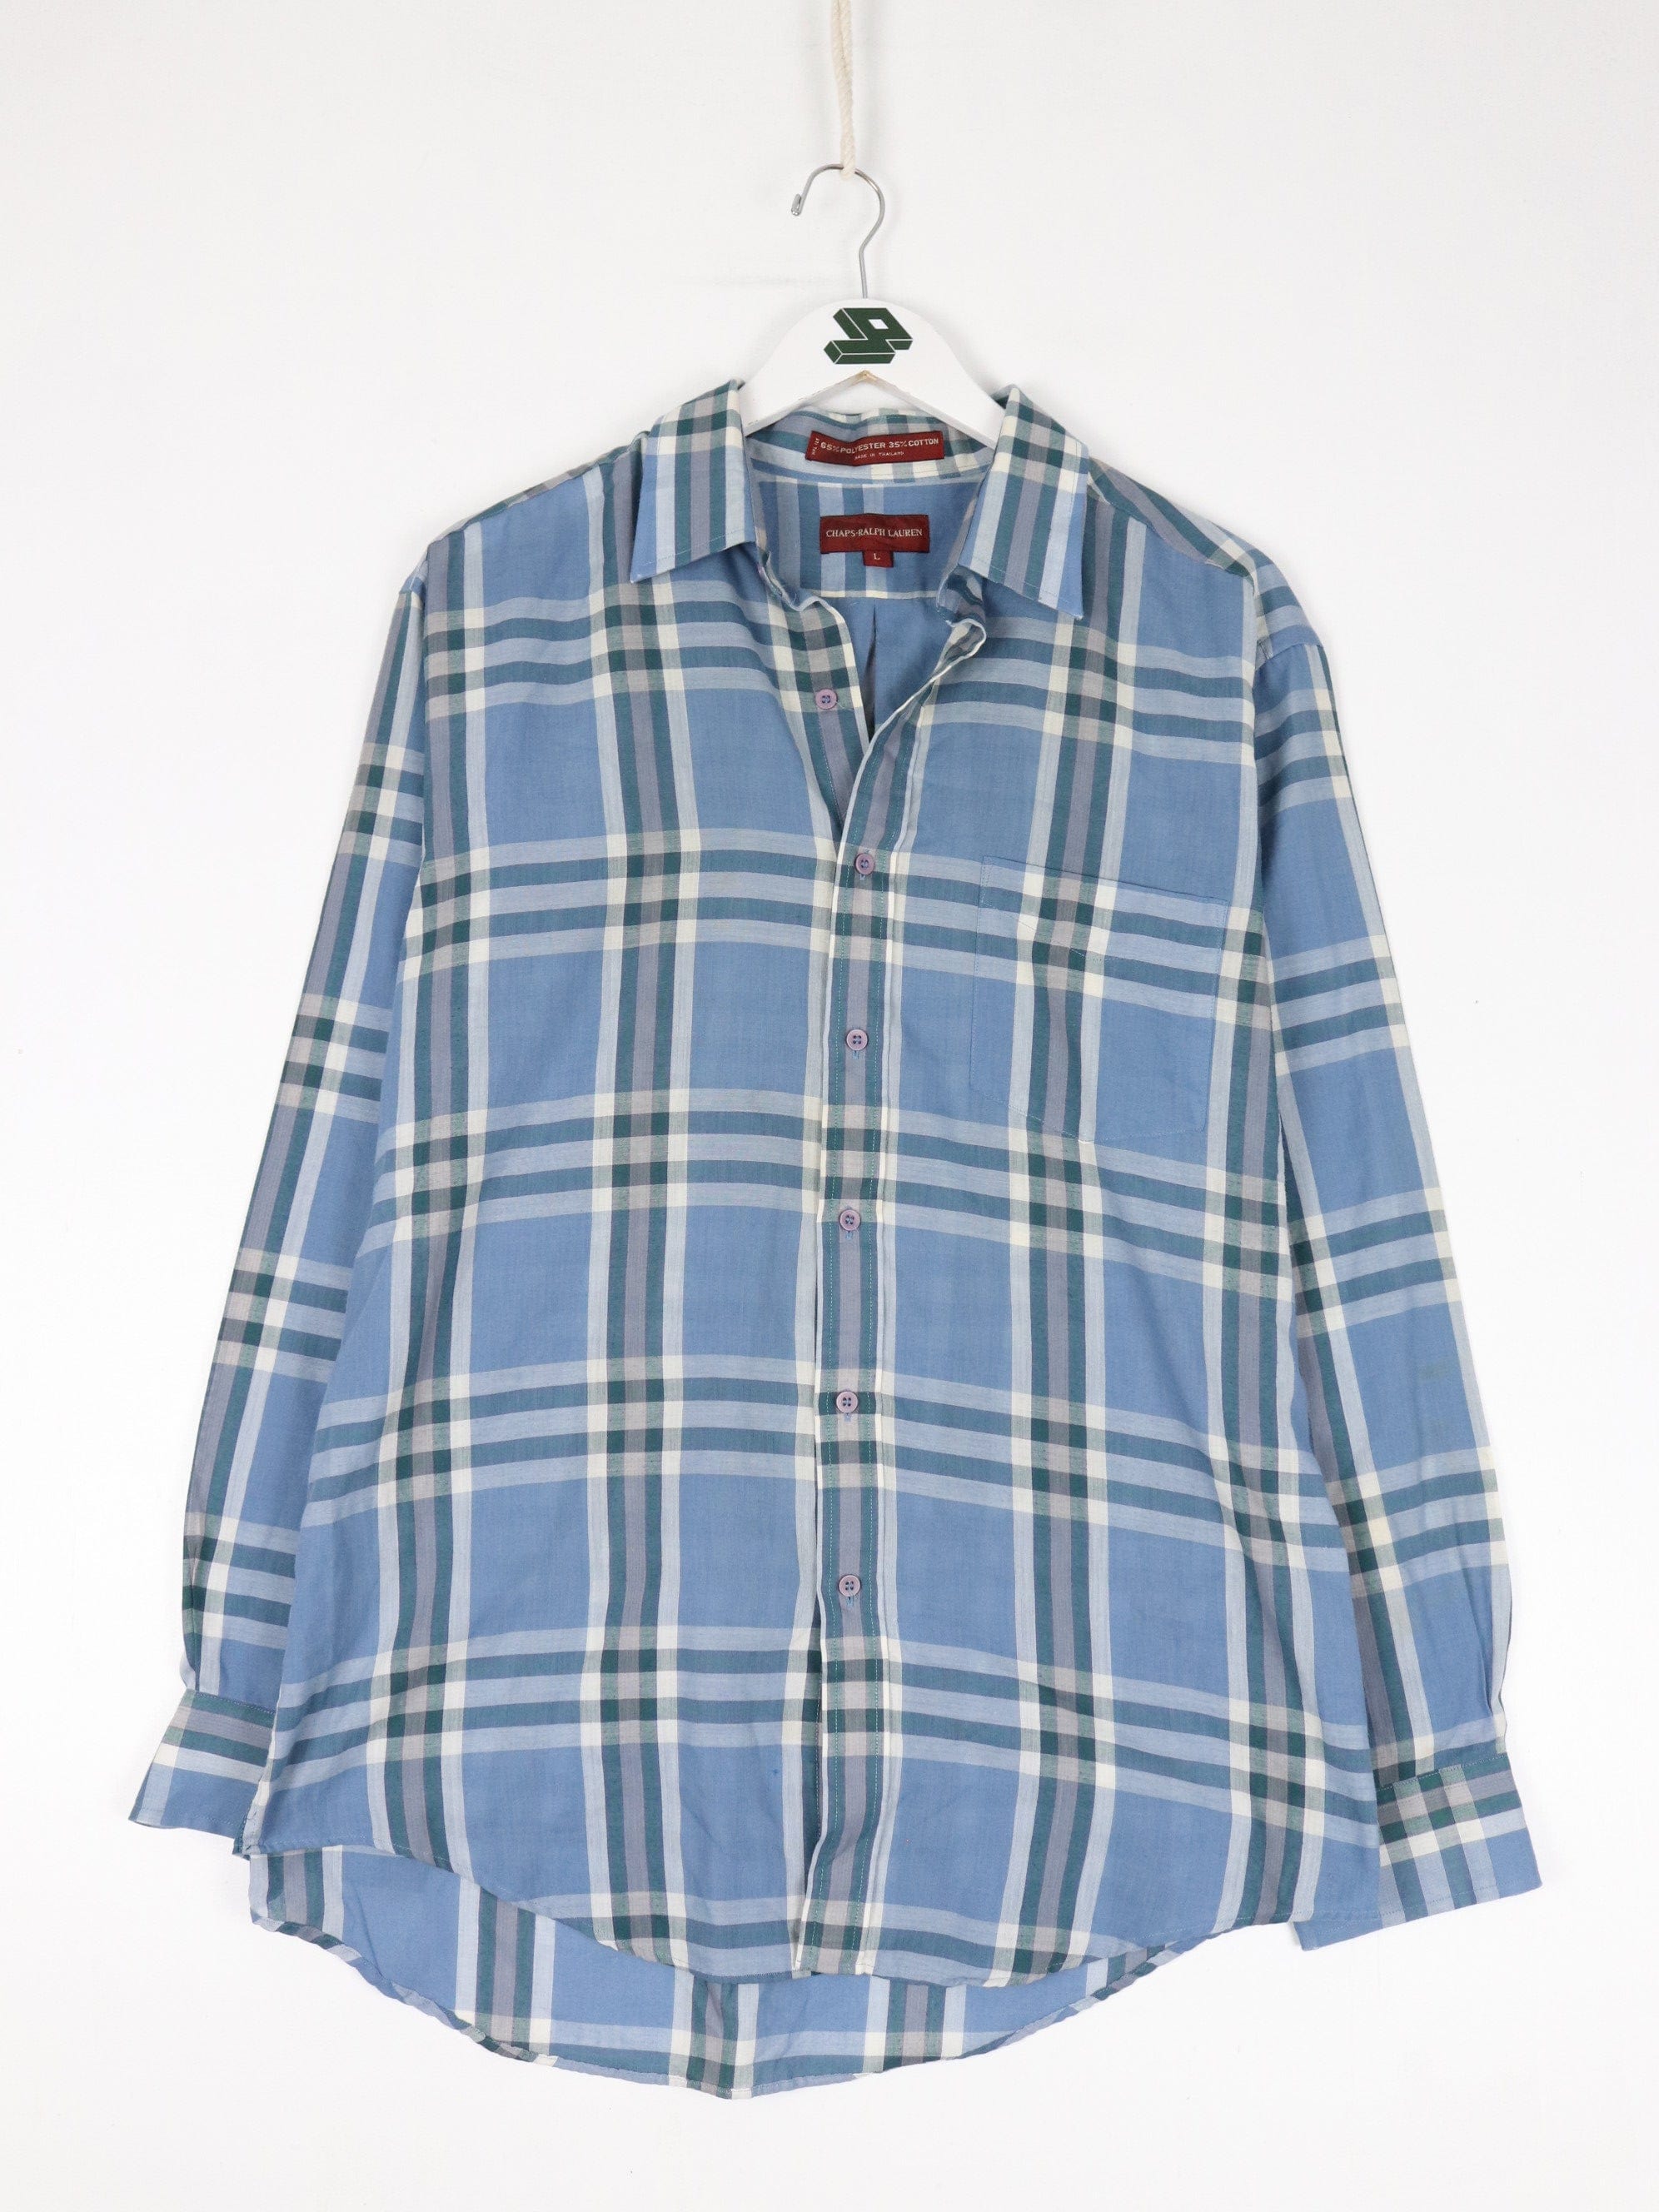 Vintage Chaps Ralph Lauren Shirt Mens Large Blue Palid Button Up